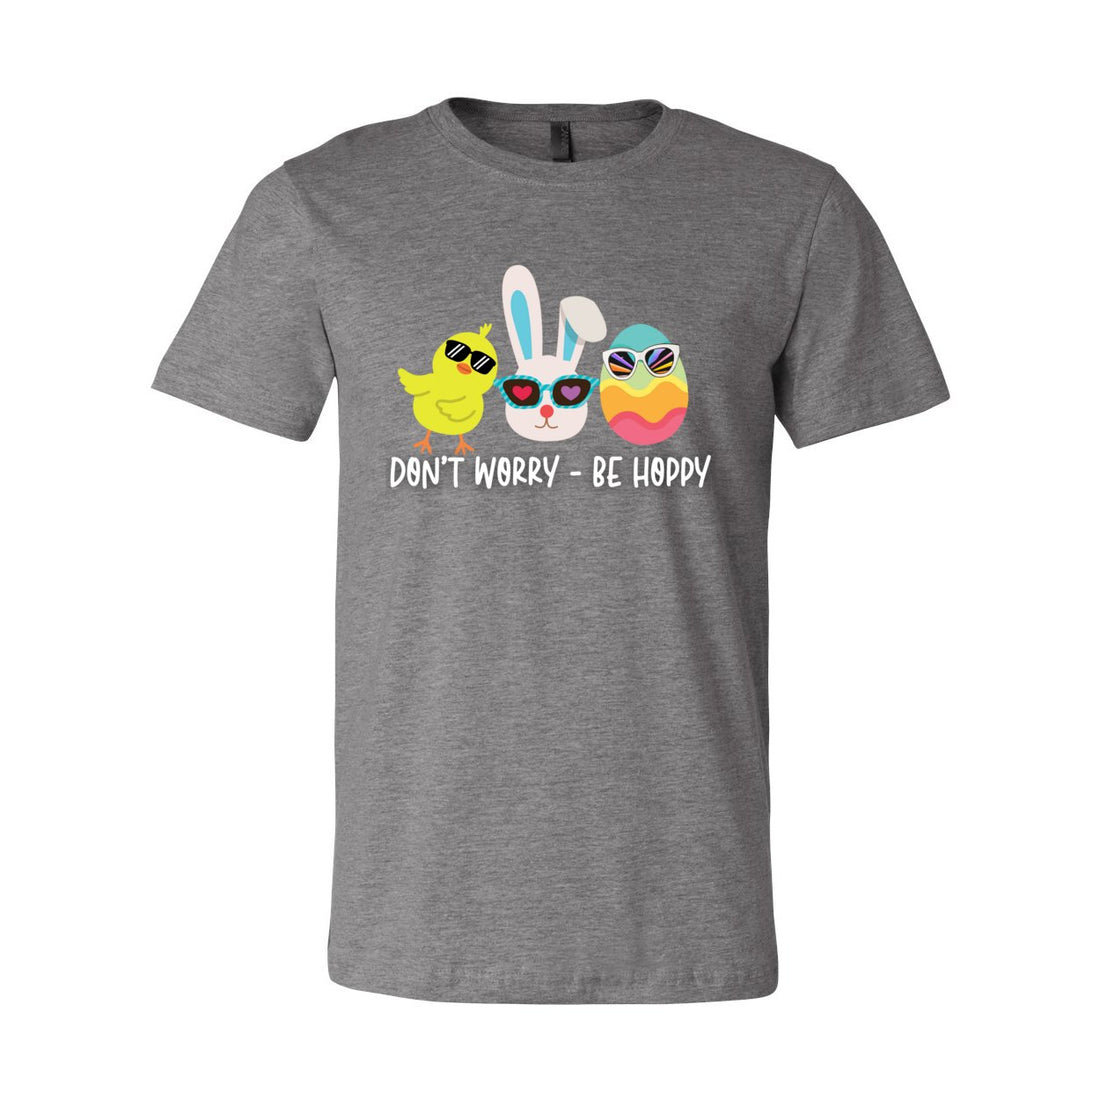 Be Hoppy Tee - T-Shirts - Positively Sassy - Be Hoppy Tee